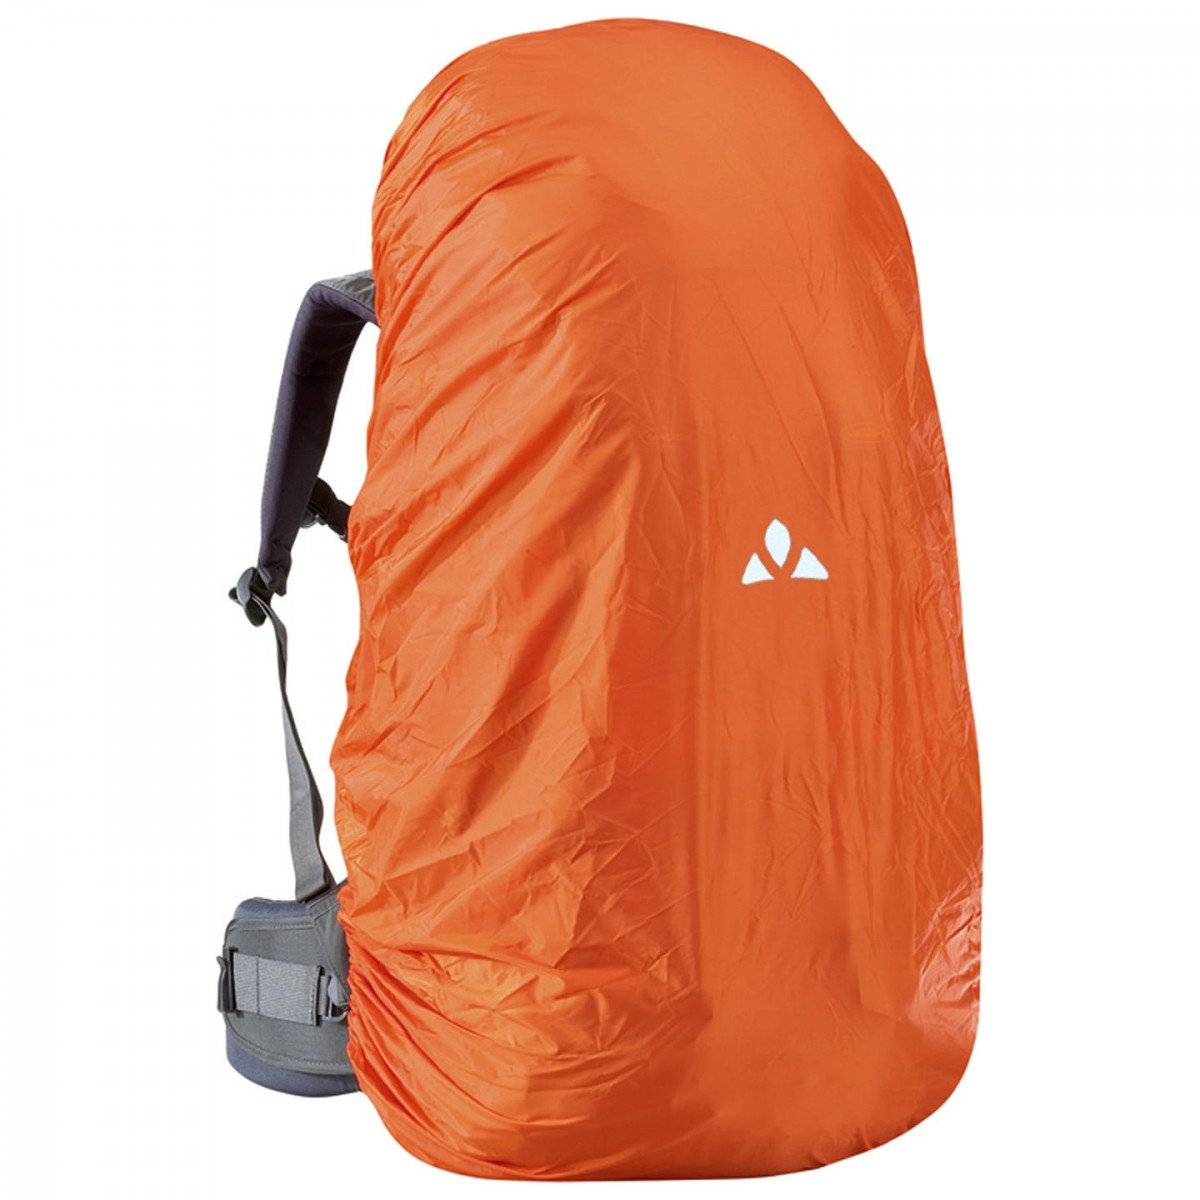 Чехол для рюкзака VAUDE Raincover for backpacks, 15-30 л, 227, orange, 14101 чехол для рюкзака vaude raincover for backpacks 55 80 л 227 orange 14869